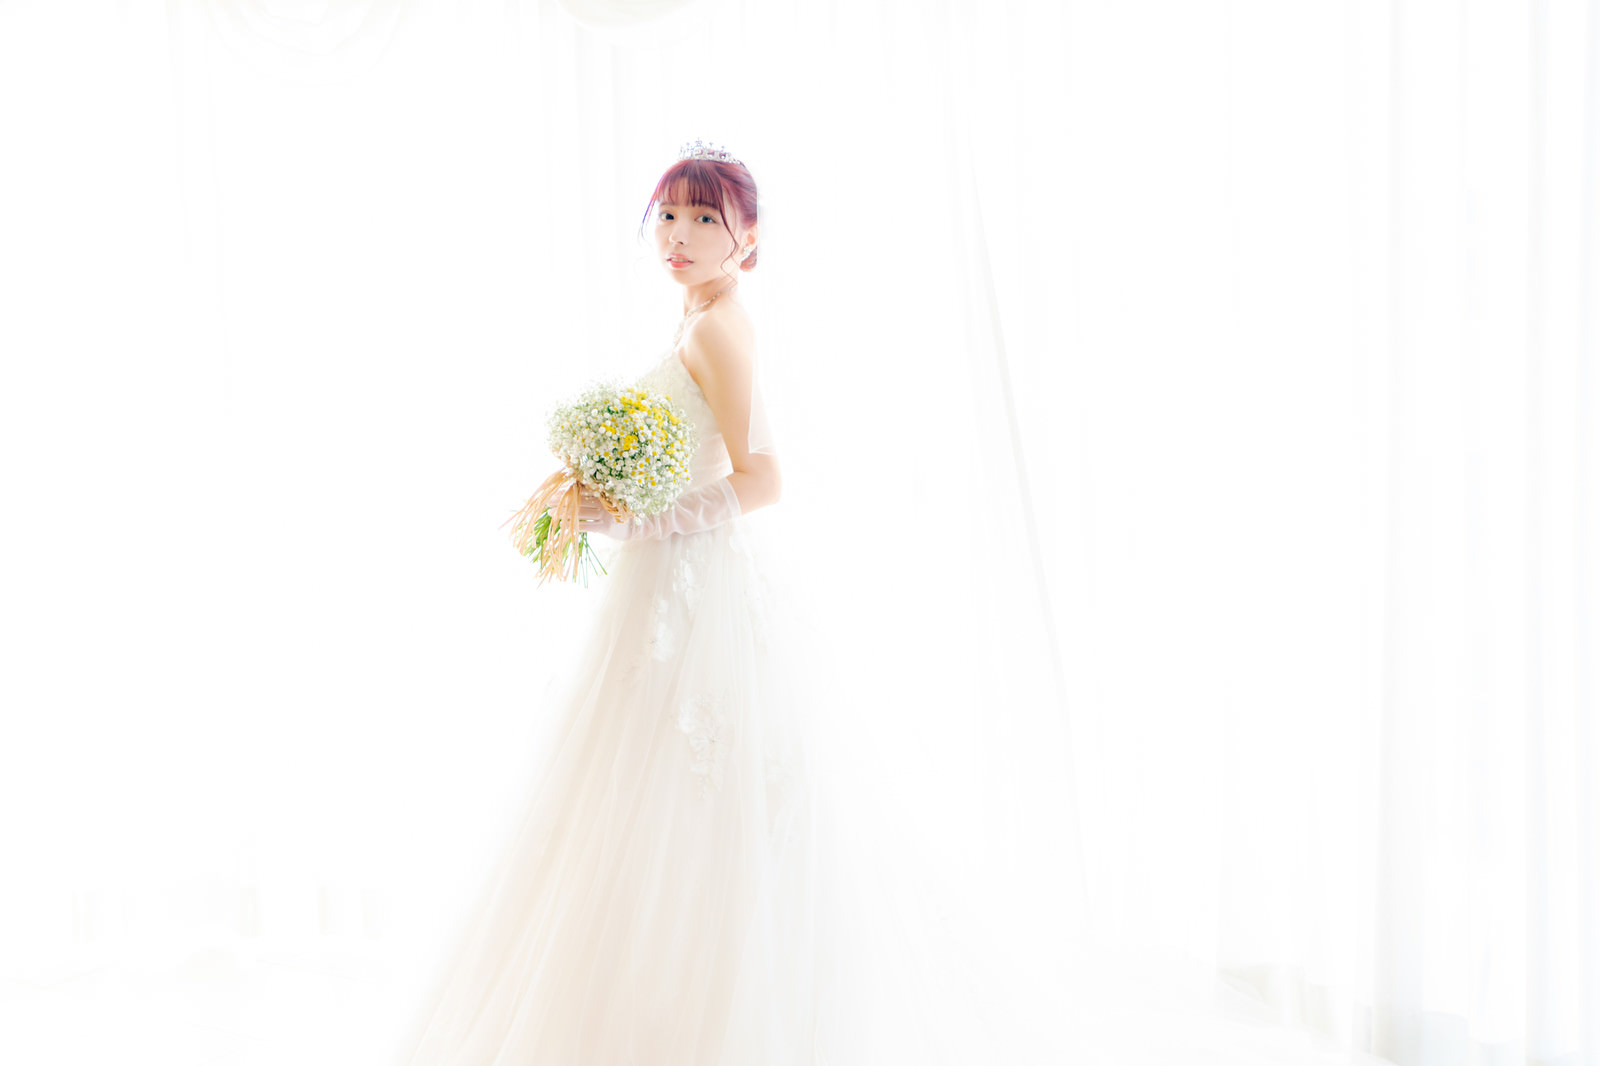 「白いウェでlングドレス姿で登場した花嫁 | フリー素材のぱくたそ」の写真［モデル：高尾実生］